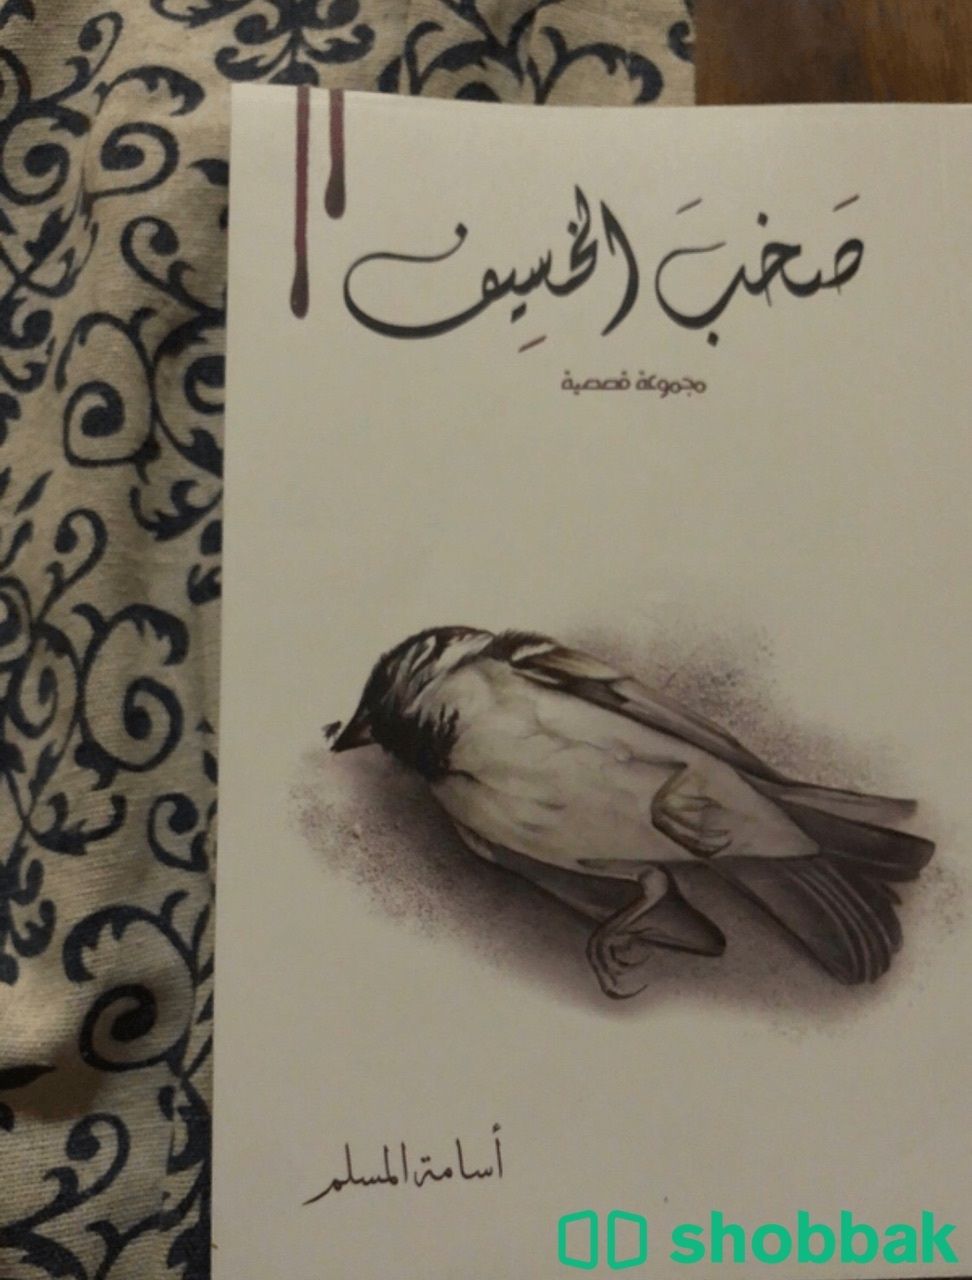 كتاب صخب الخسيف ٢ Shobbak Saudi Arabia